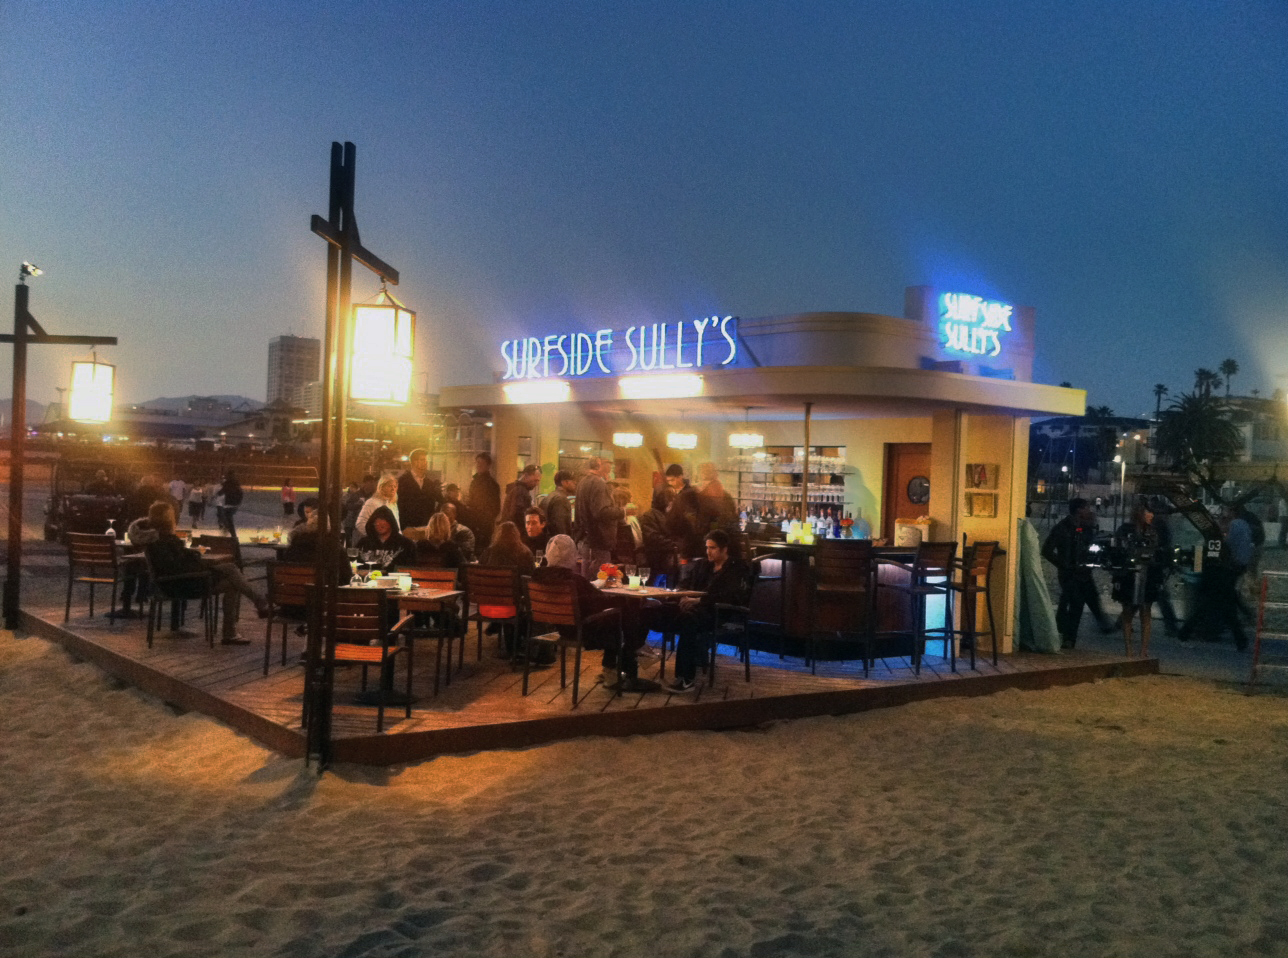 NCIS:LA - Restaurant created and built on the beach in Santa Monica